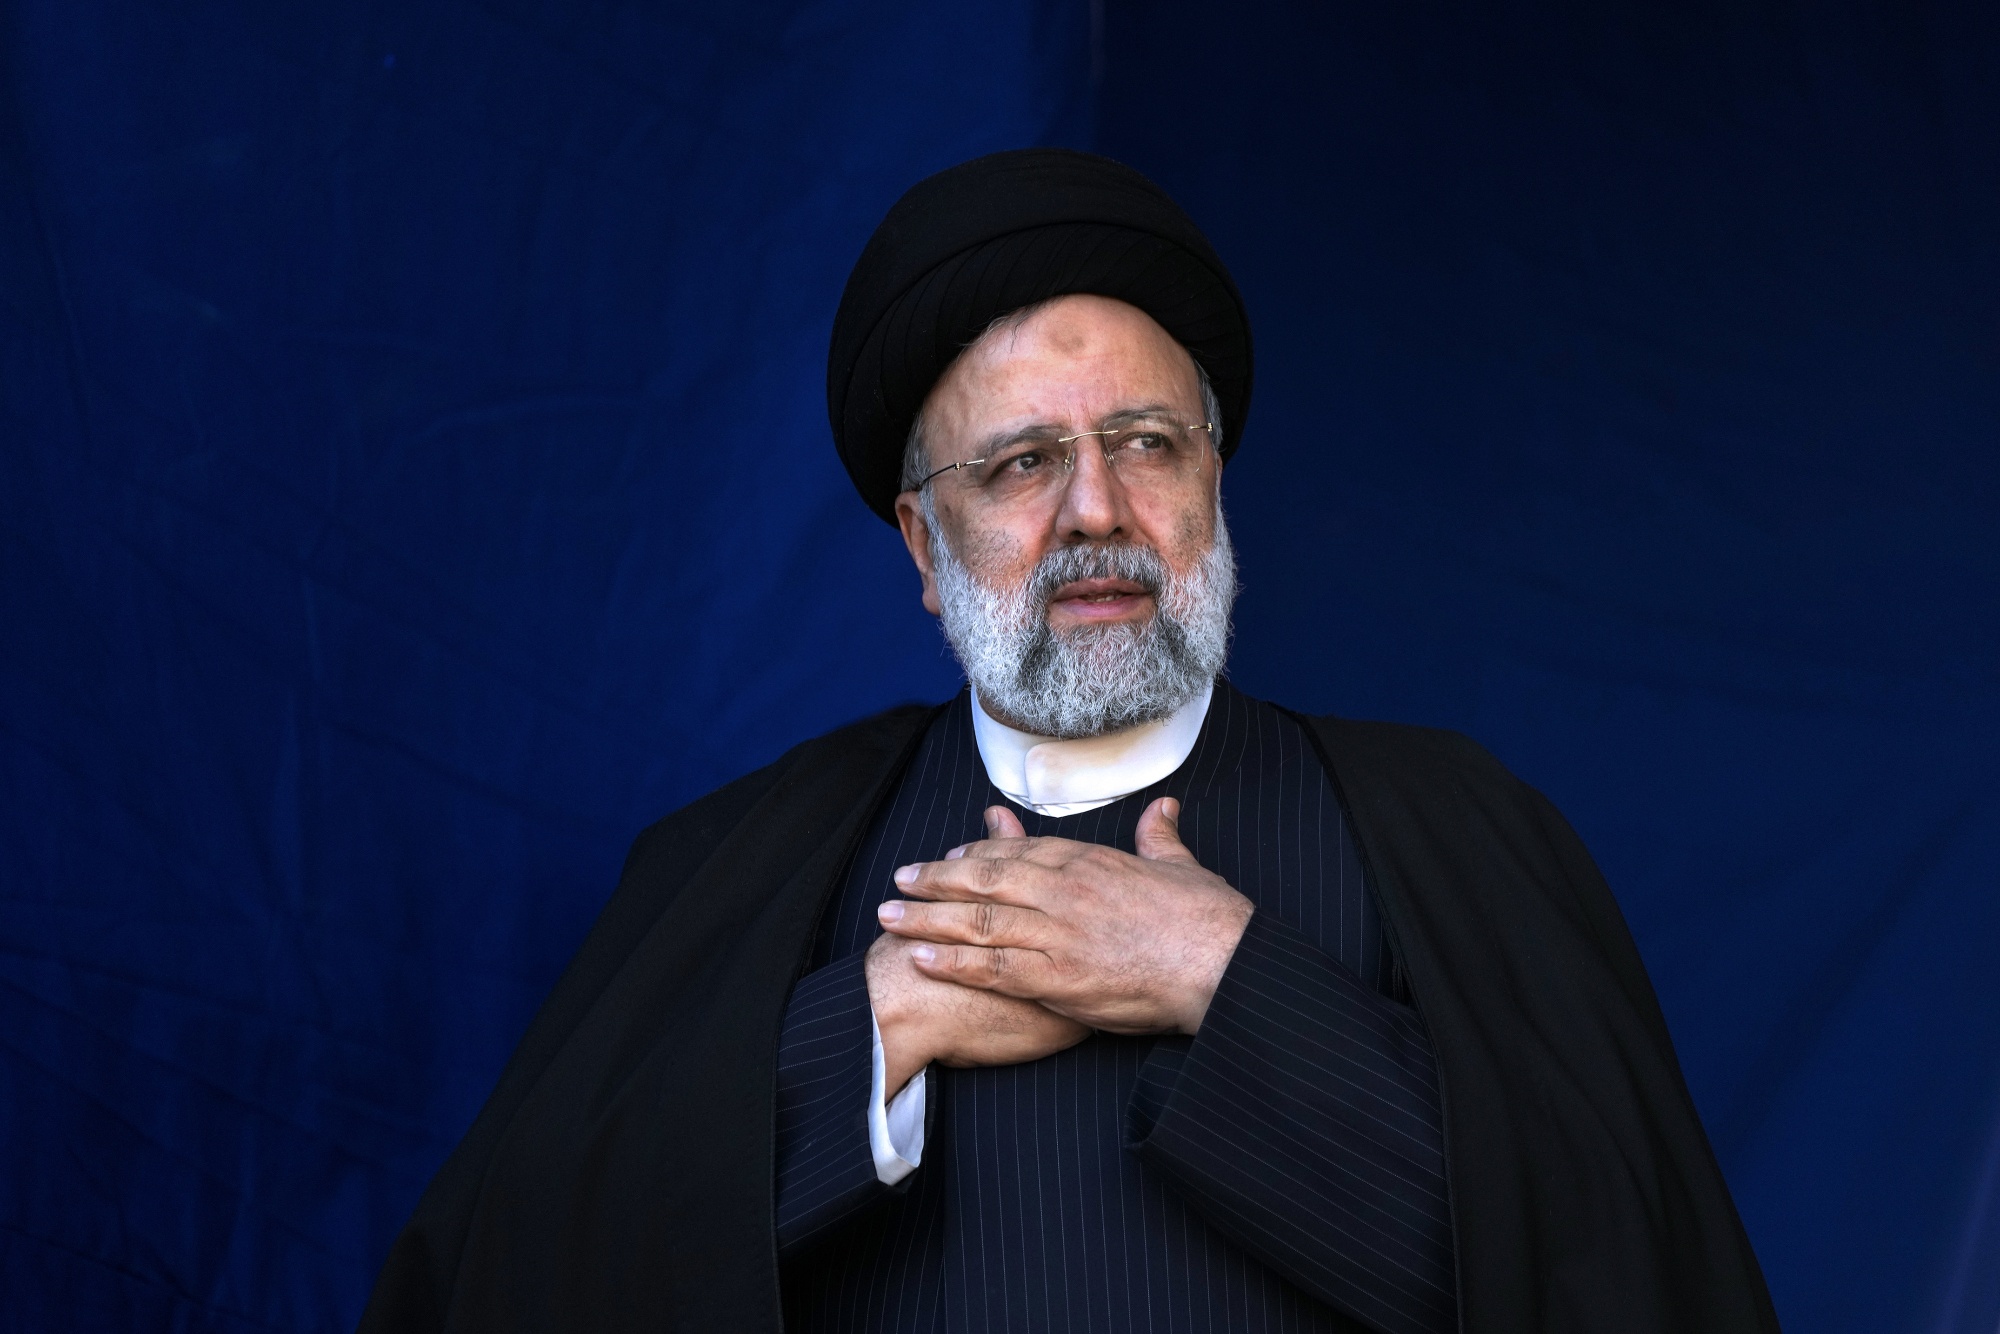 Muere presidente de Irán, en un accidente de helicóptero